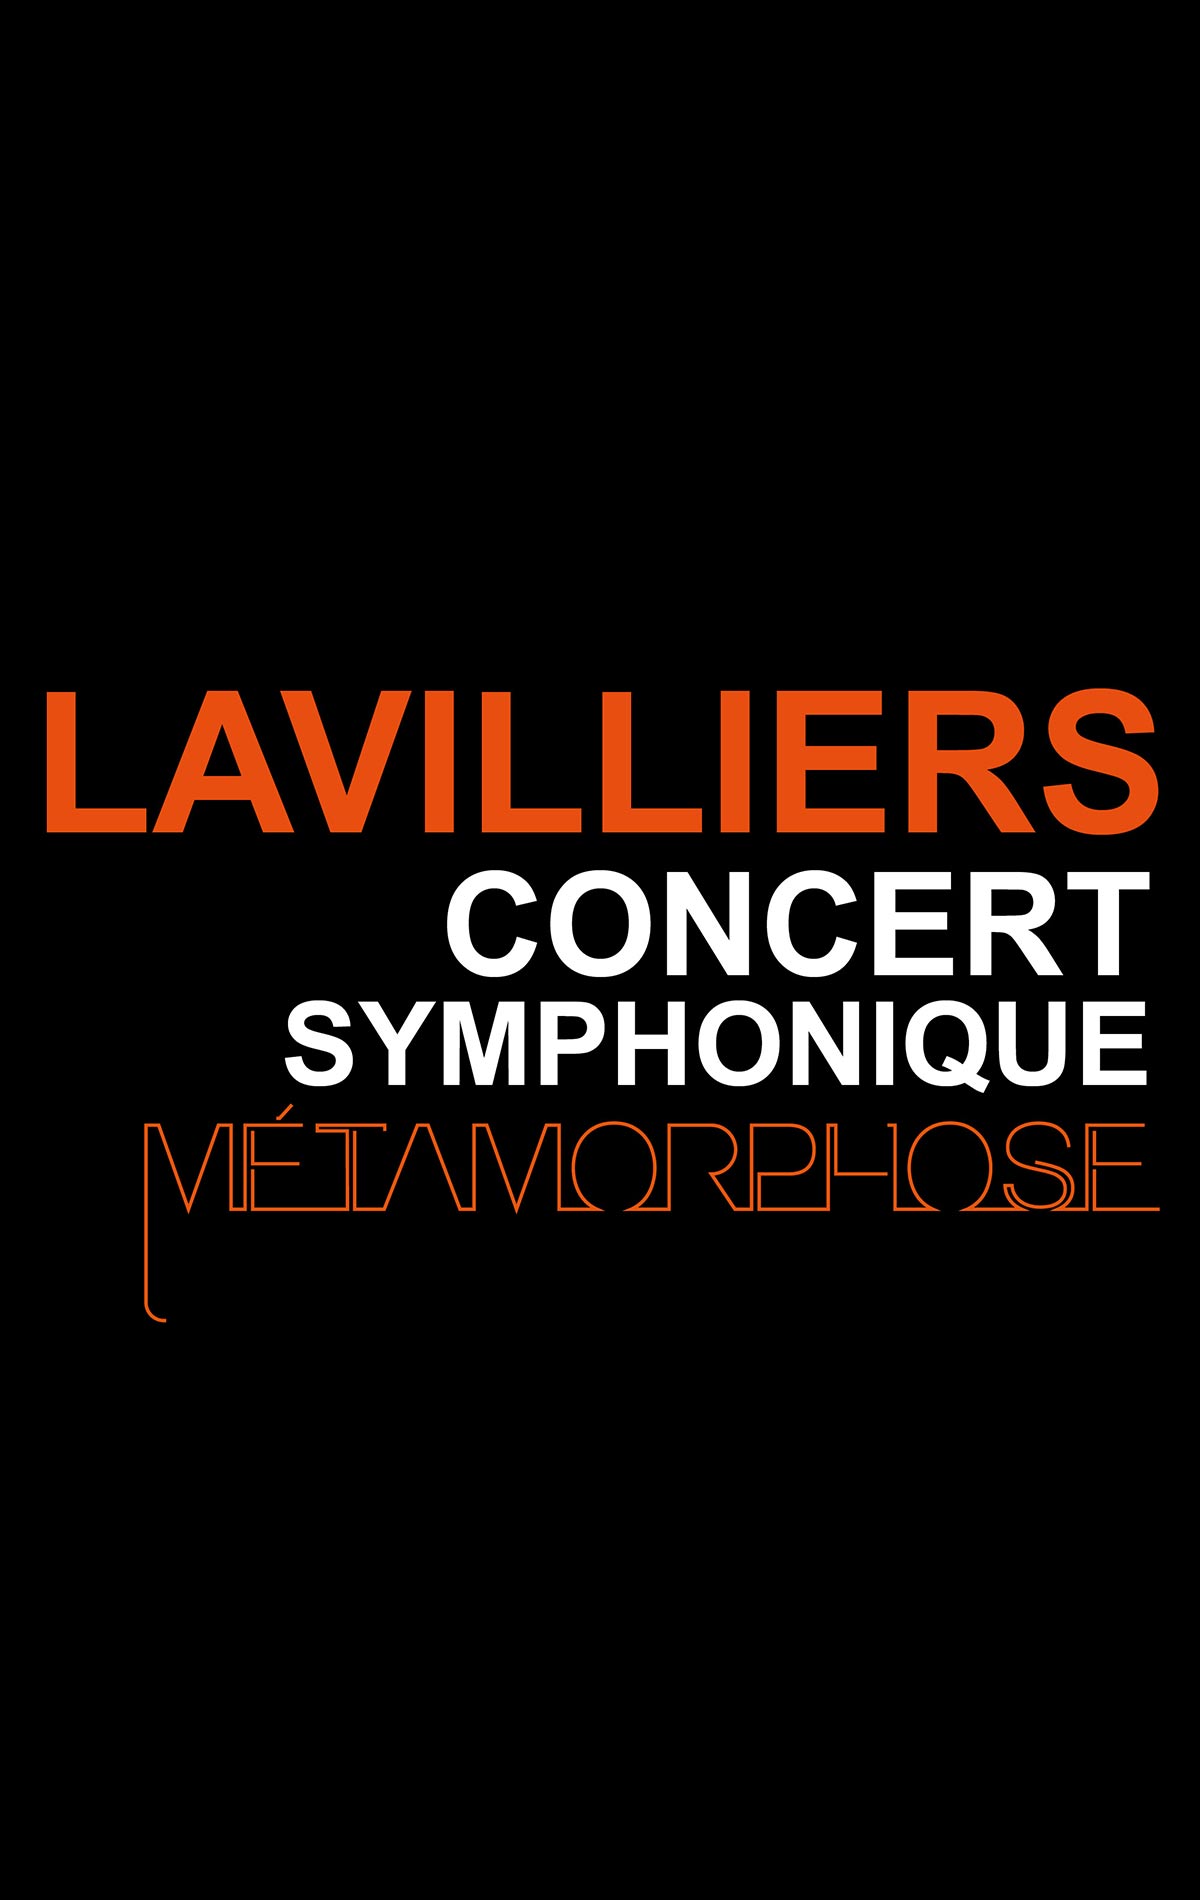 Bernard Lavilliers - Métamorphose at Palais Des Congres De Tours Tickets